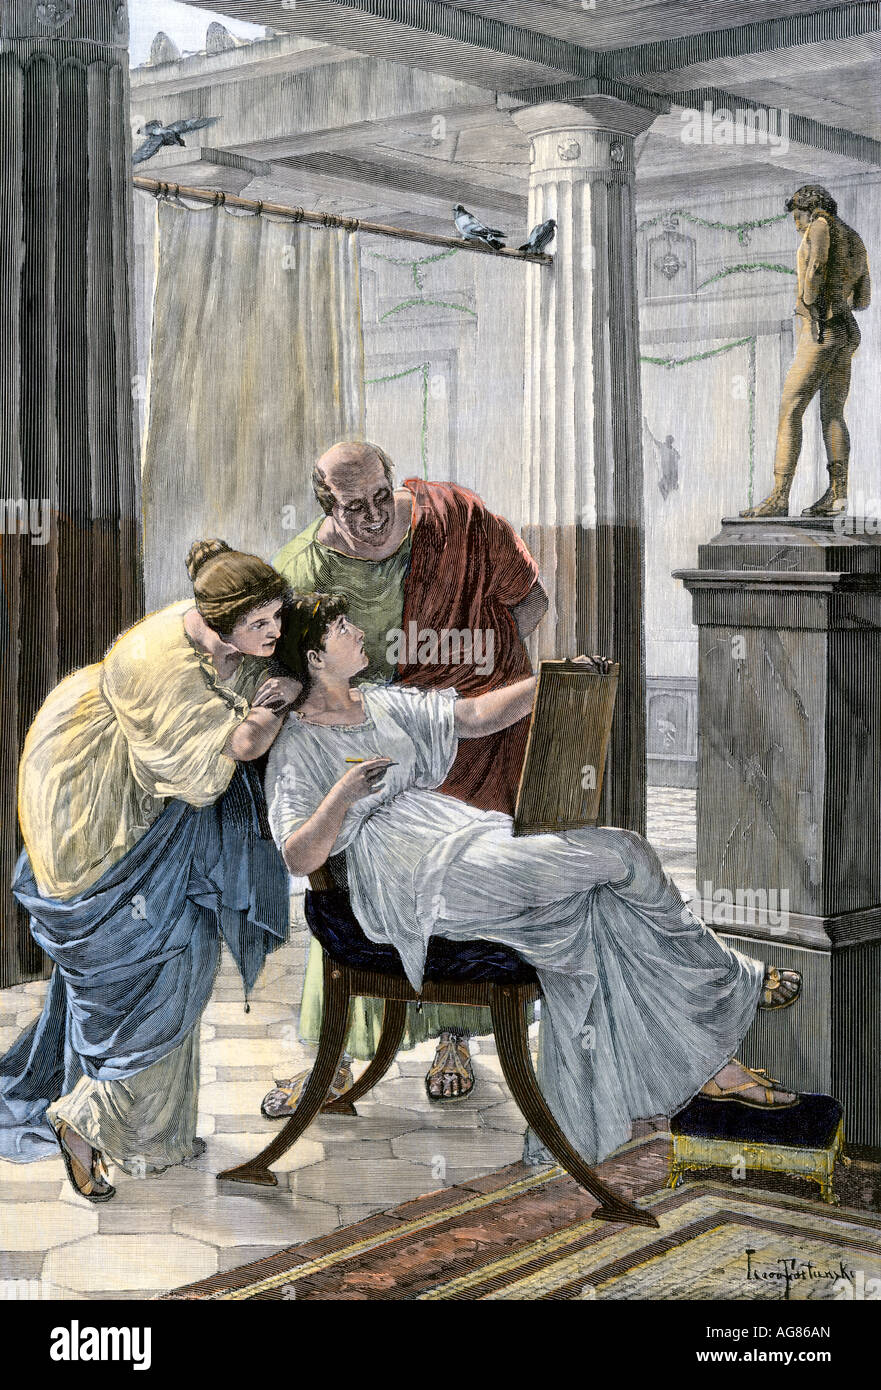 Femme de prendre des leçons d'art dans l'atrium de la maison romaine. À la main, gravure sur bois Banque D'Images